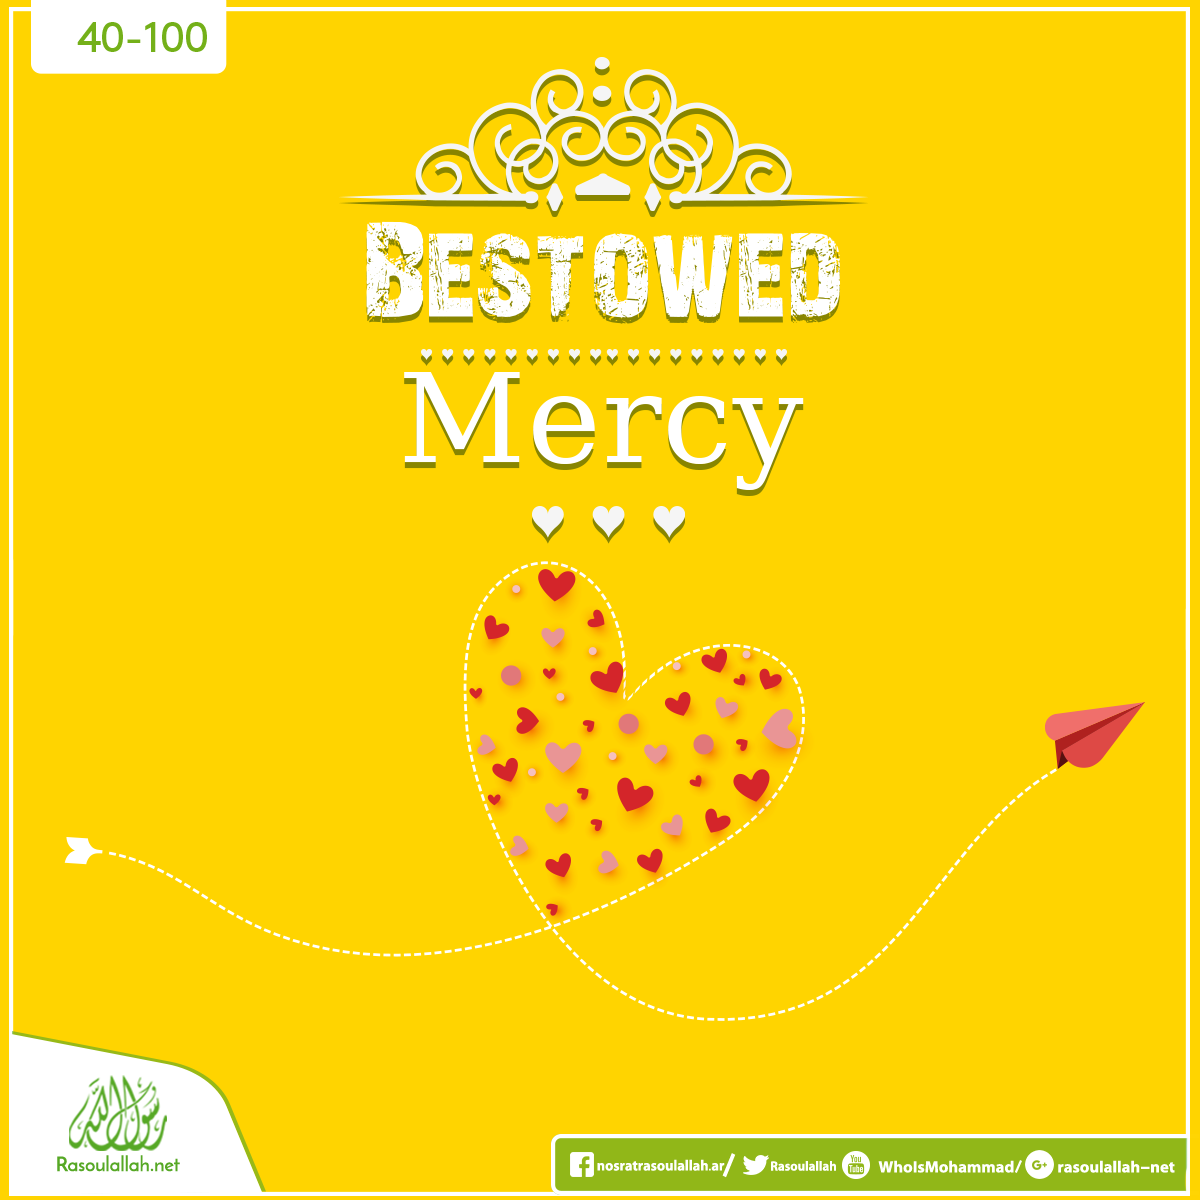 Bestowed Mercy